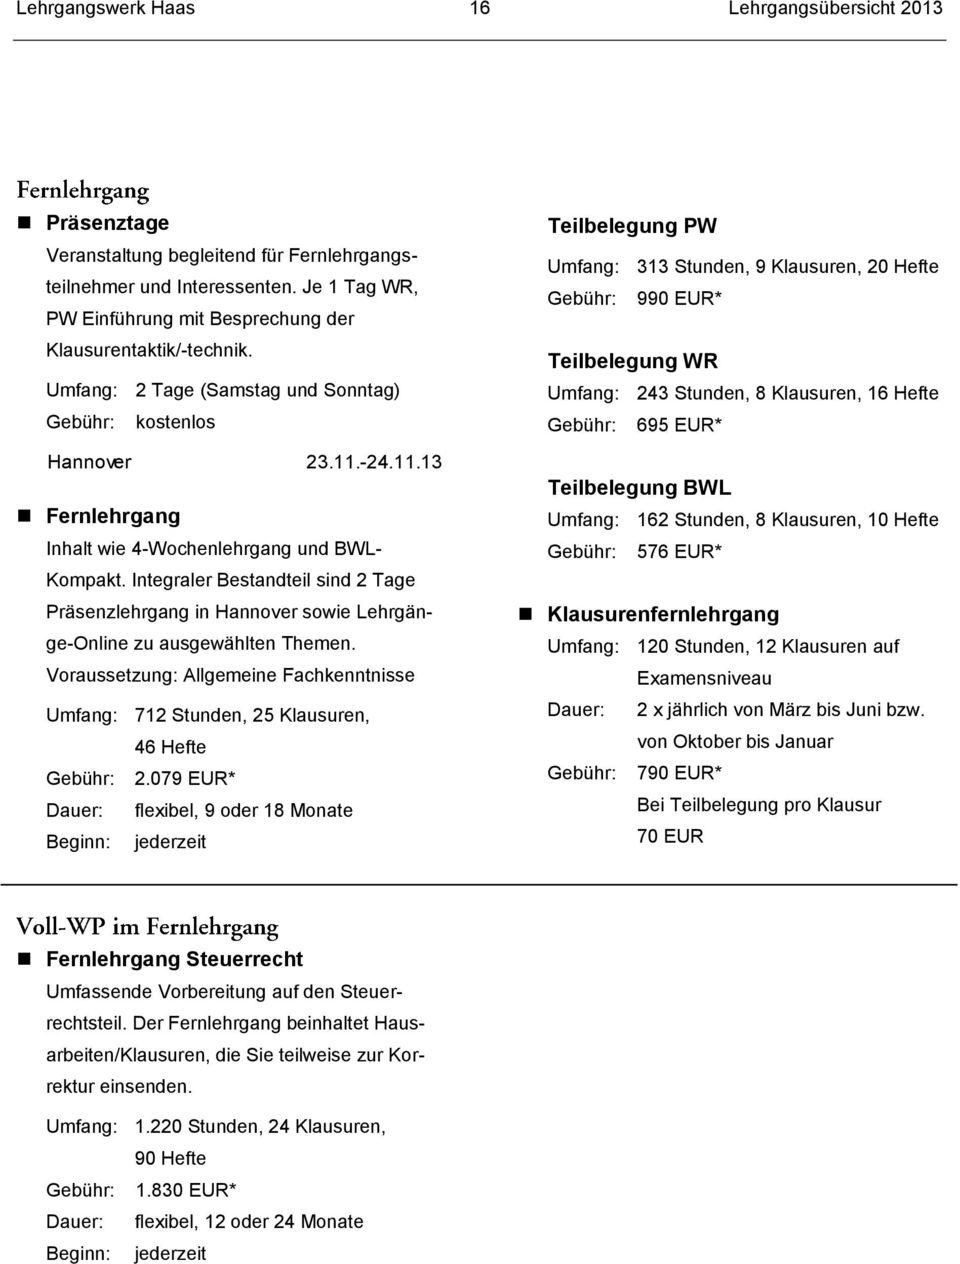 -24.11.13 Fernlehrgang Inhalt wie 4-Wochenlehrgang und BWL- Kompakt. Integraler Bestandteil sind 2 Tage Präsenzlehrgang in Hannover sowie Lehrgänge-Online zu ausgewählten Themen.